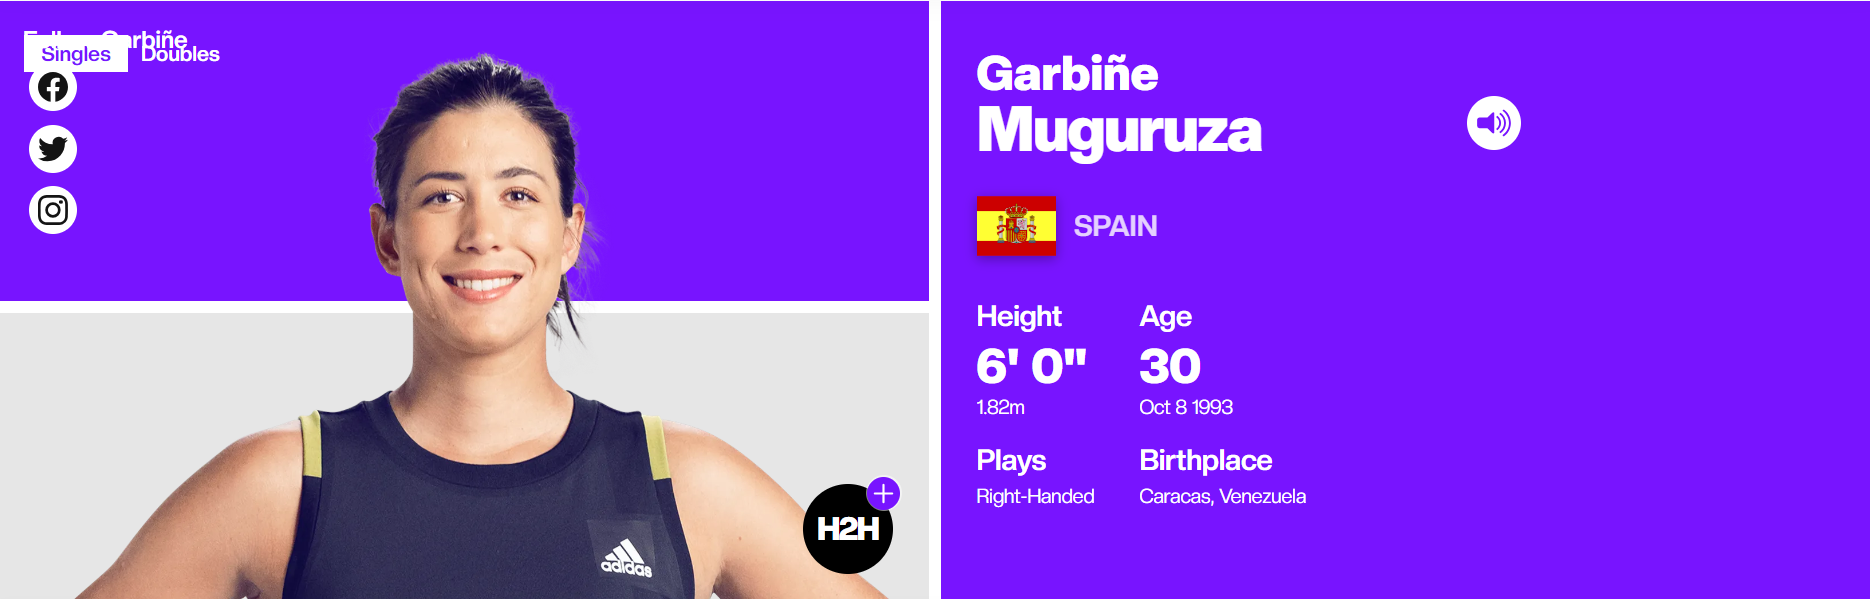 Garbiñe Muguruza en el Ranking WTA / Fuente: WTA